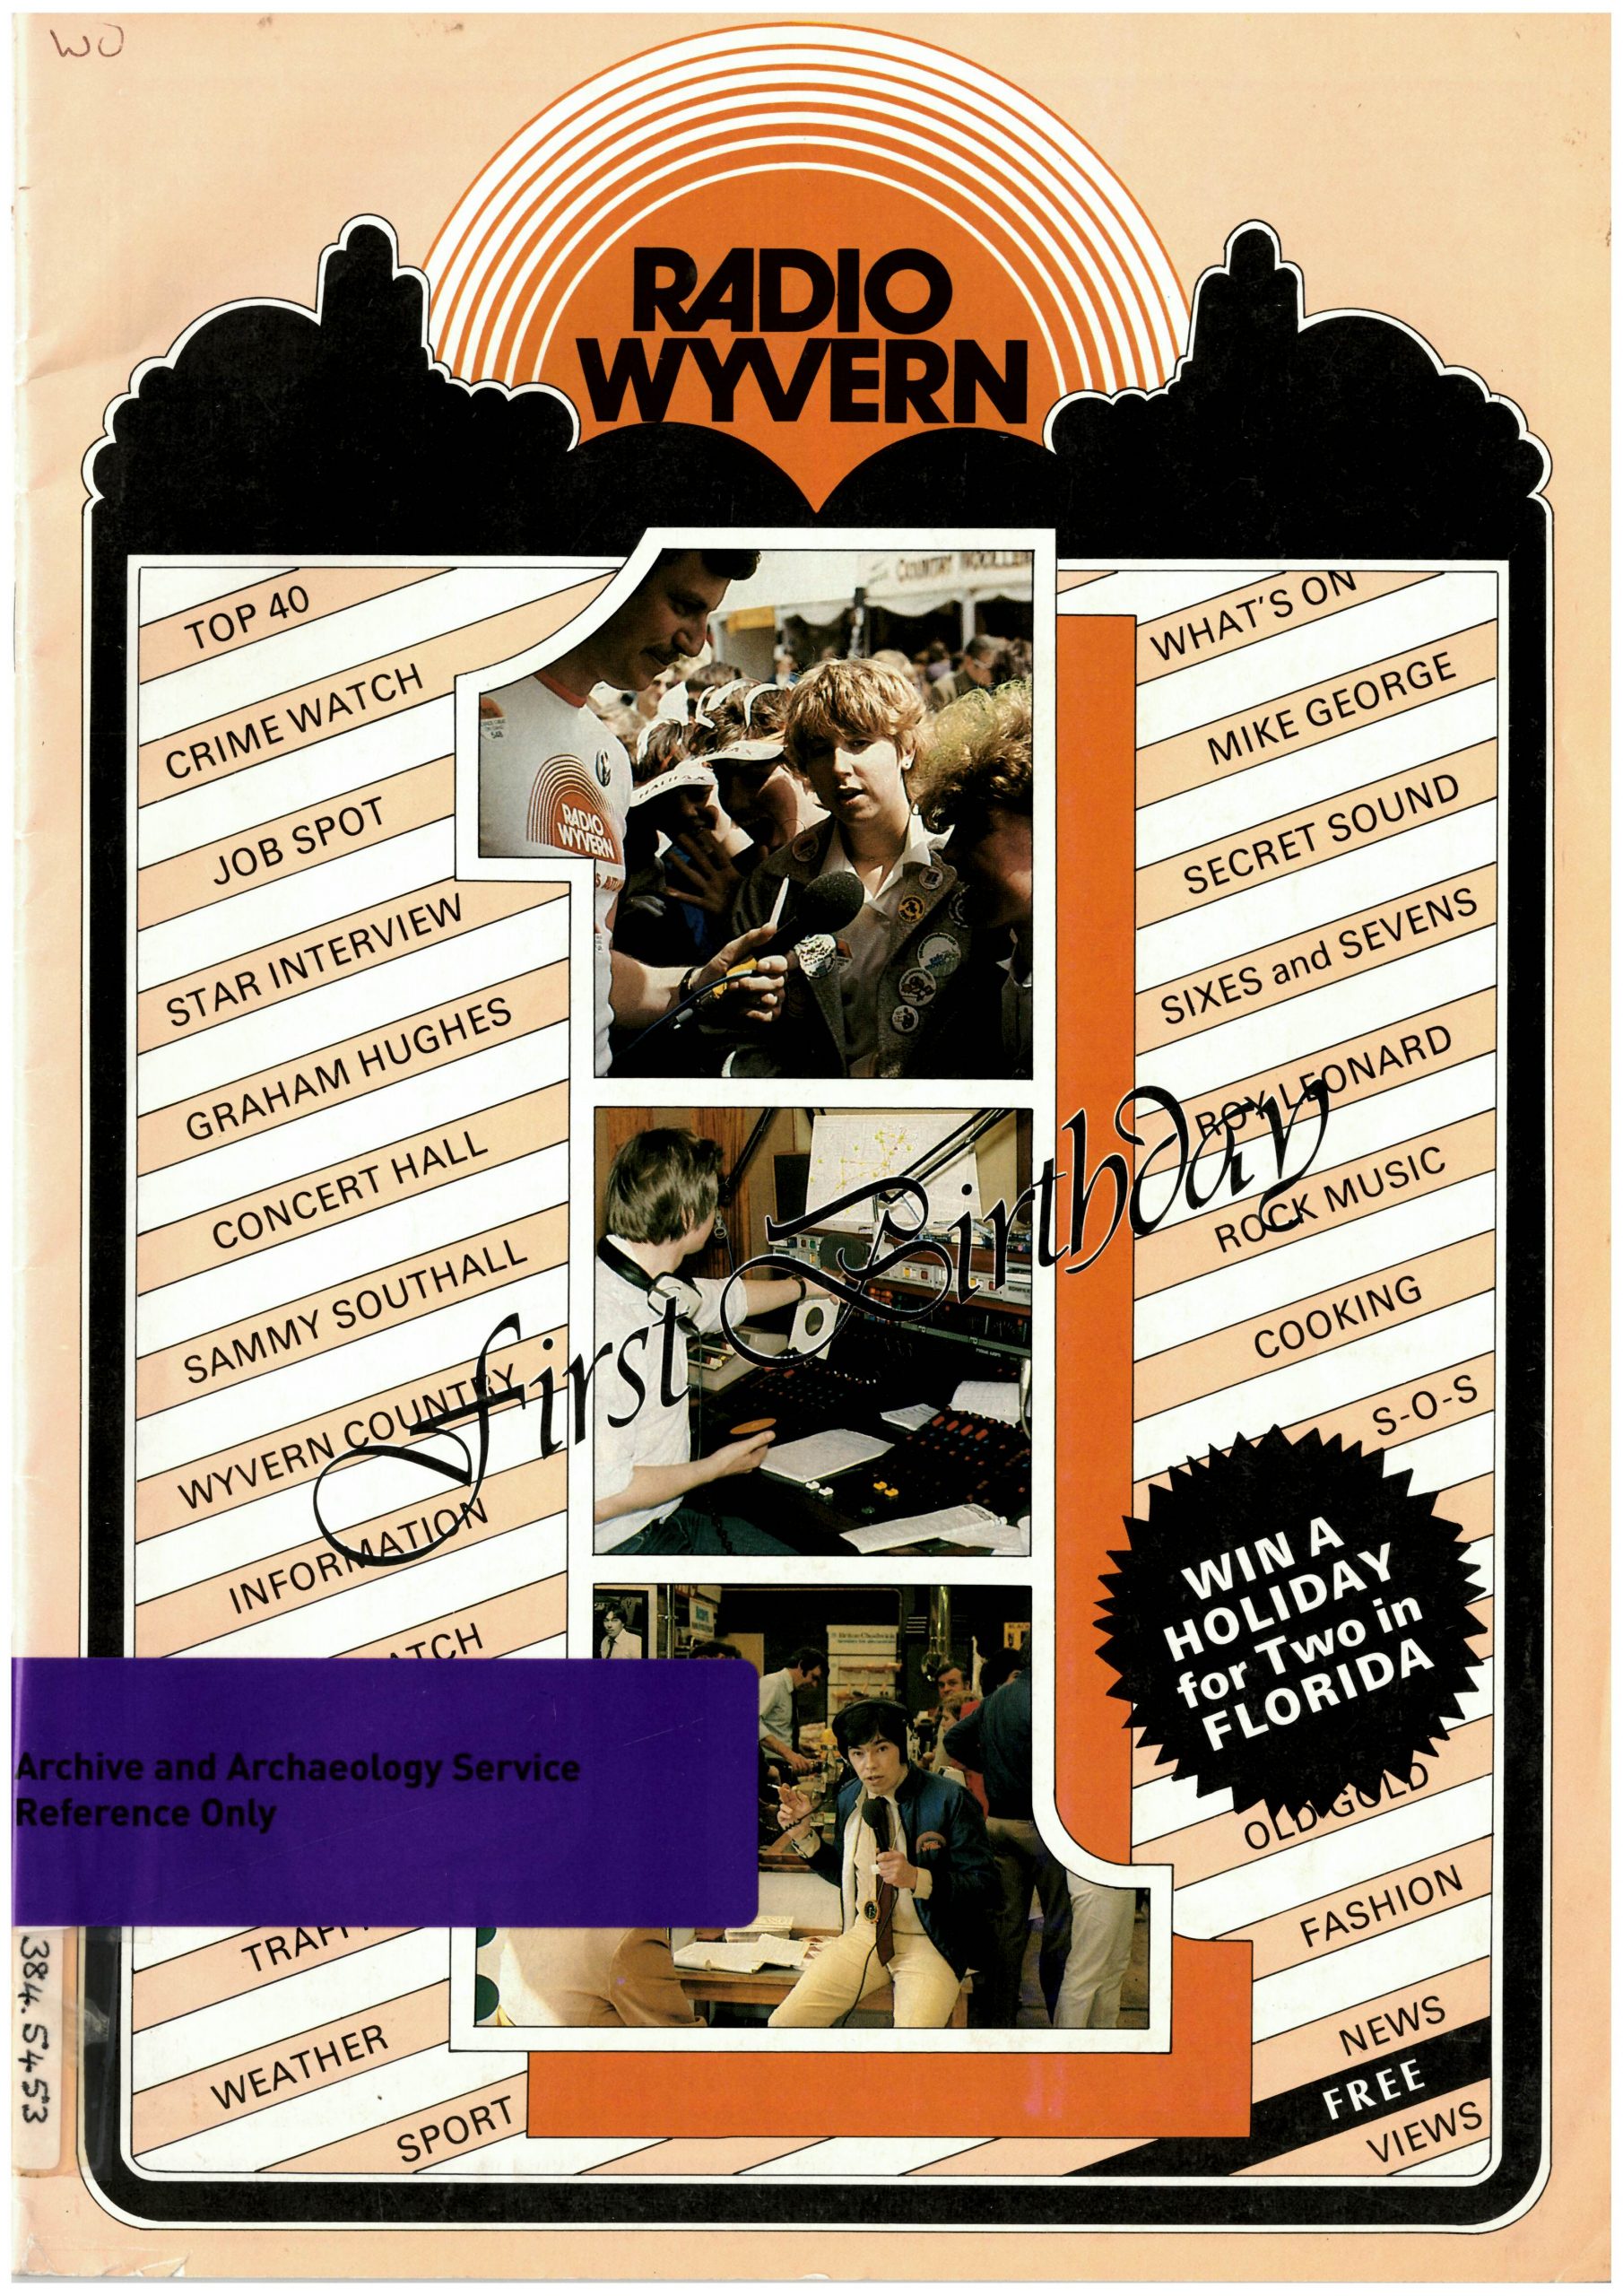 Radio Wyvern 1st birthday magazine